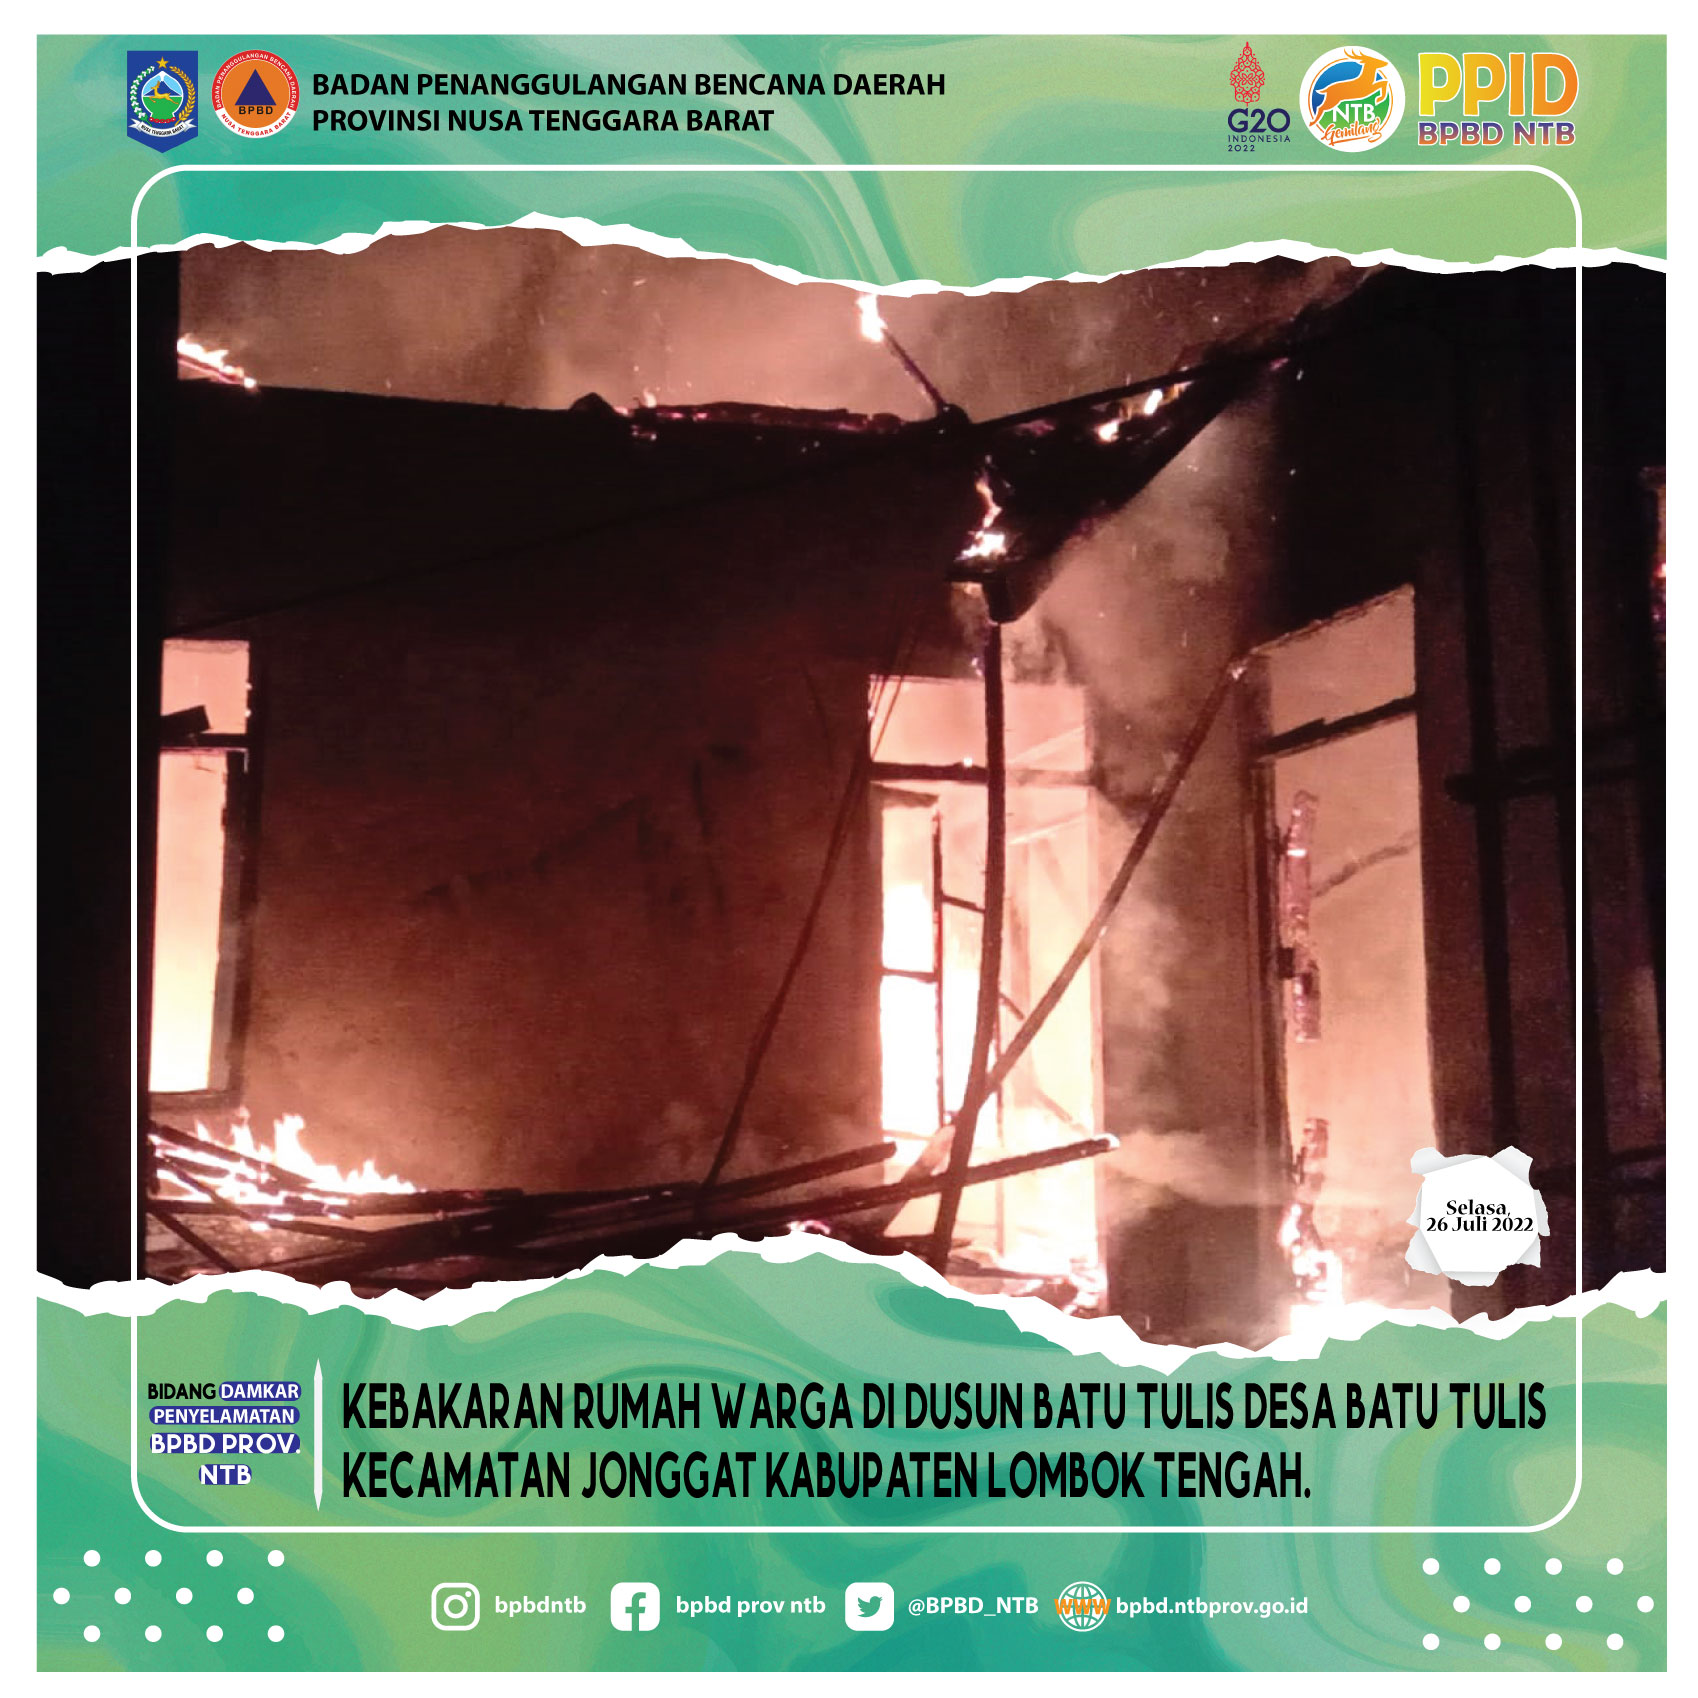 Kebakaran Rumah warga di Dusun Batu Tulis Desa Batu Tulis Kecamatan Jonggat Kabupaten Lombok Tengah (Selasa, 26 Juli 2022)